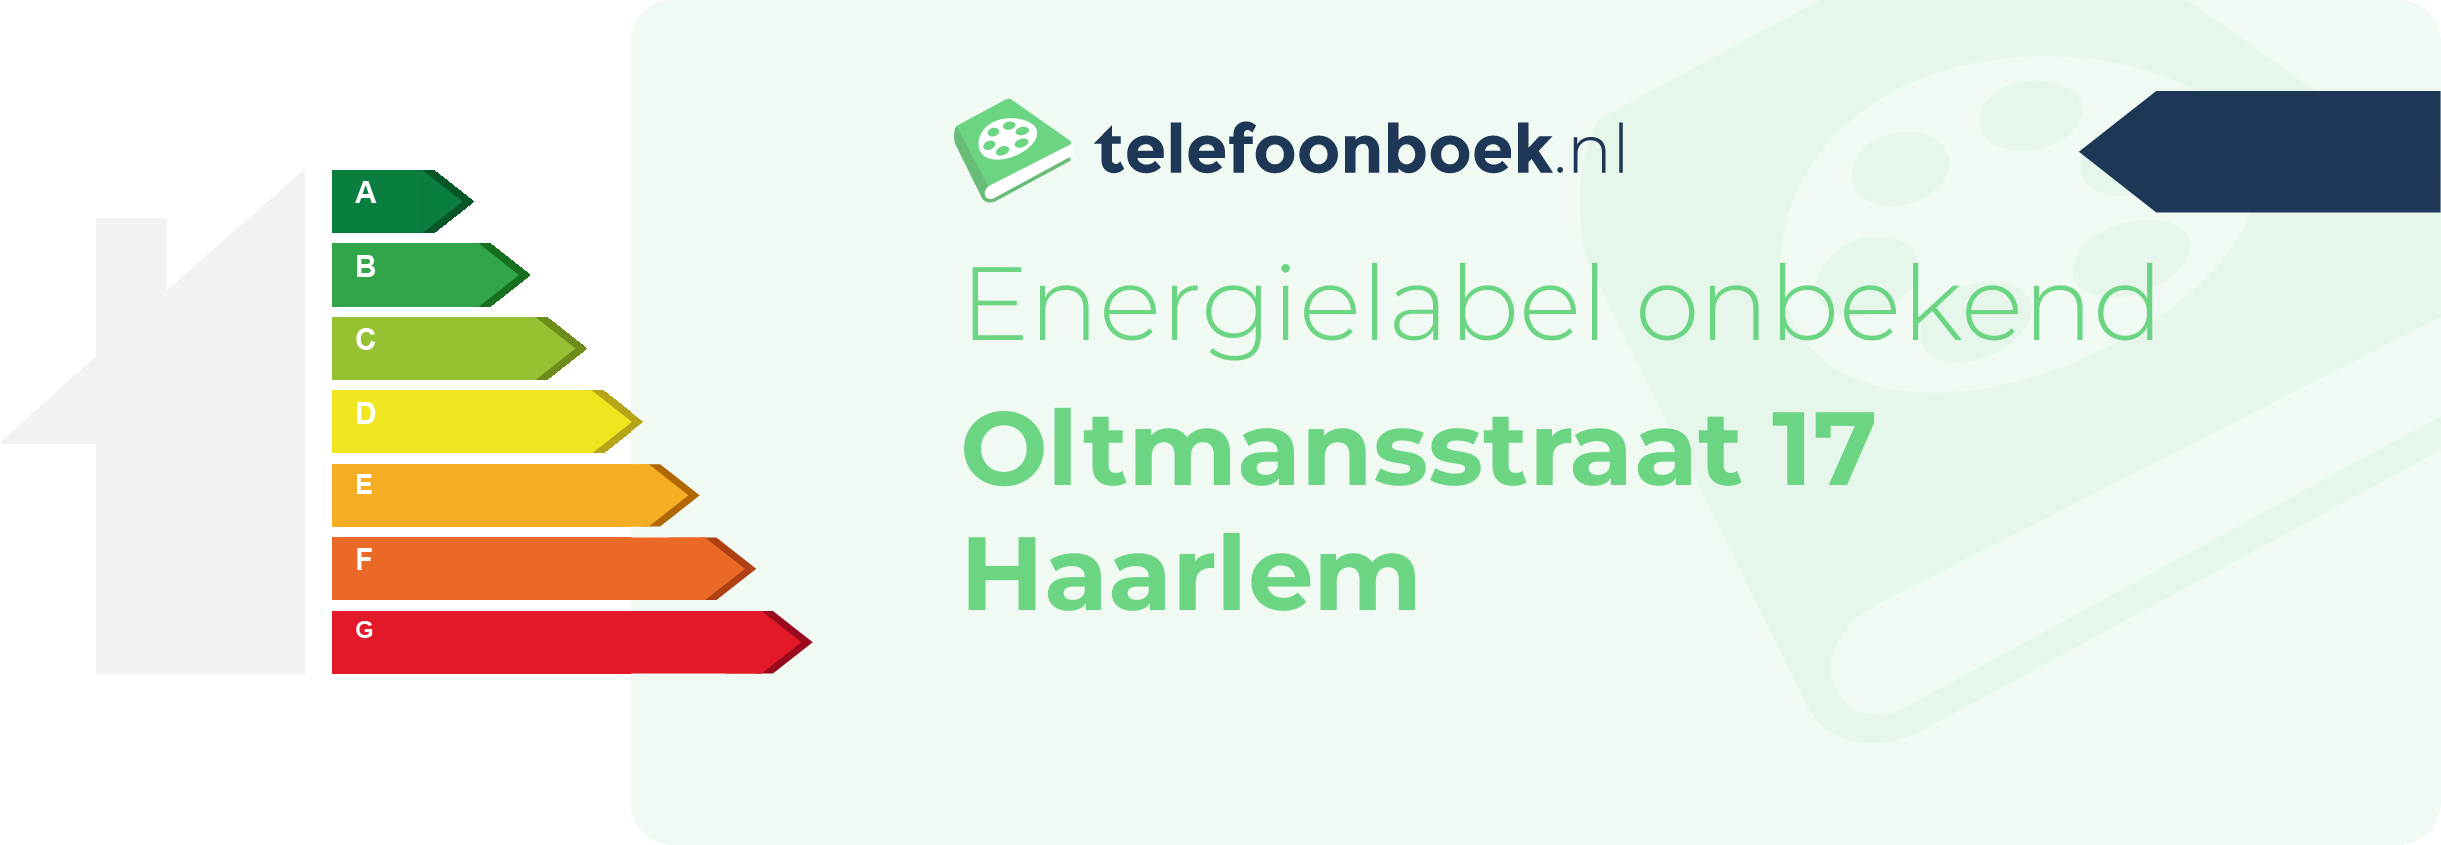 Energielabel Oltmansstraat 17 Haarlem